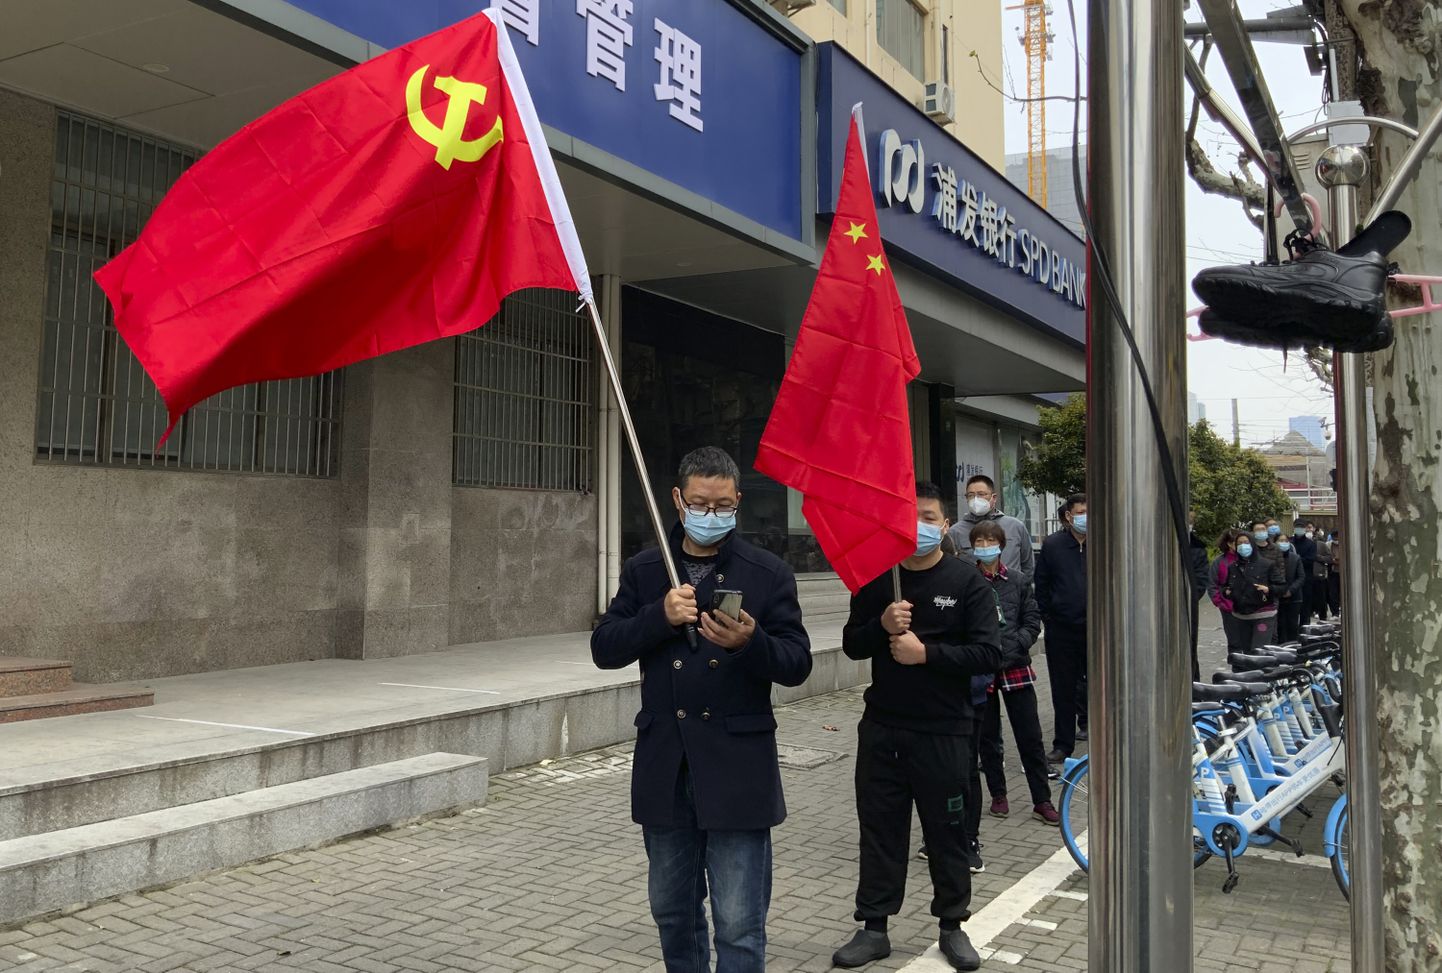 Hiina kommunistlik partei tundis huvi Eesti valimiste vastu